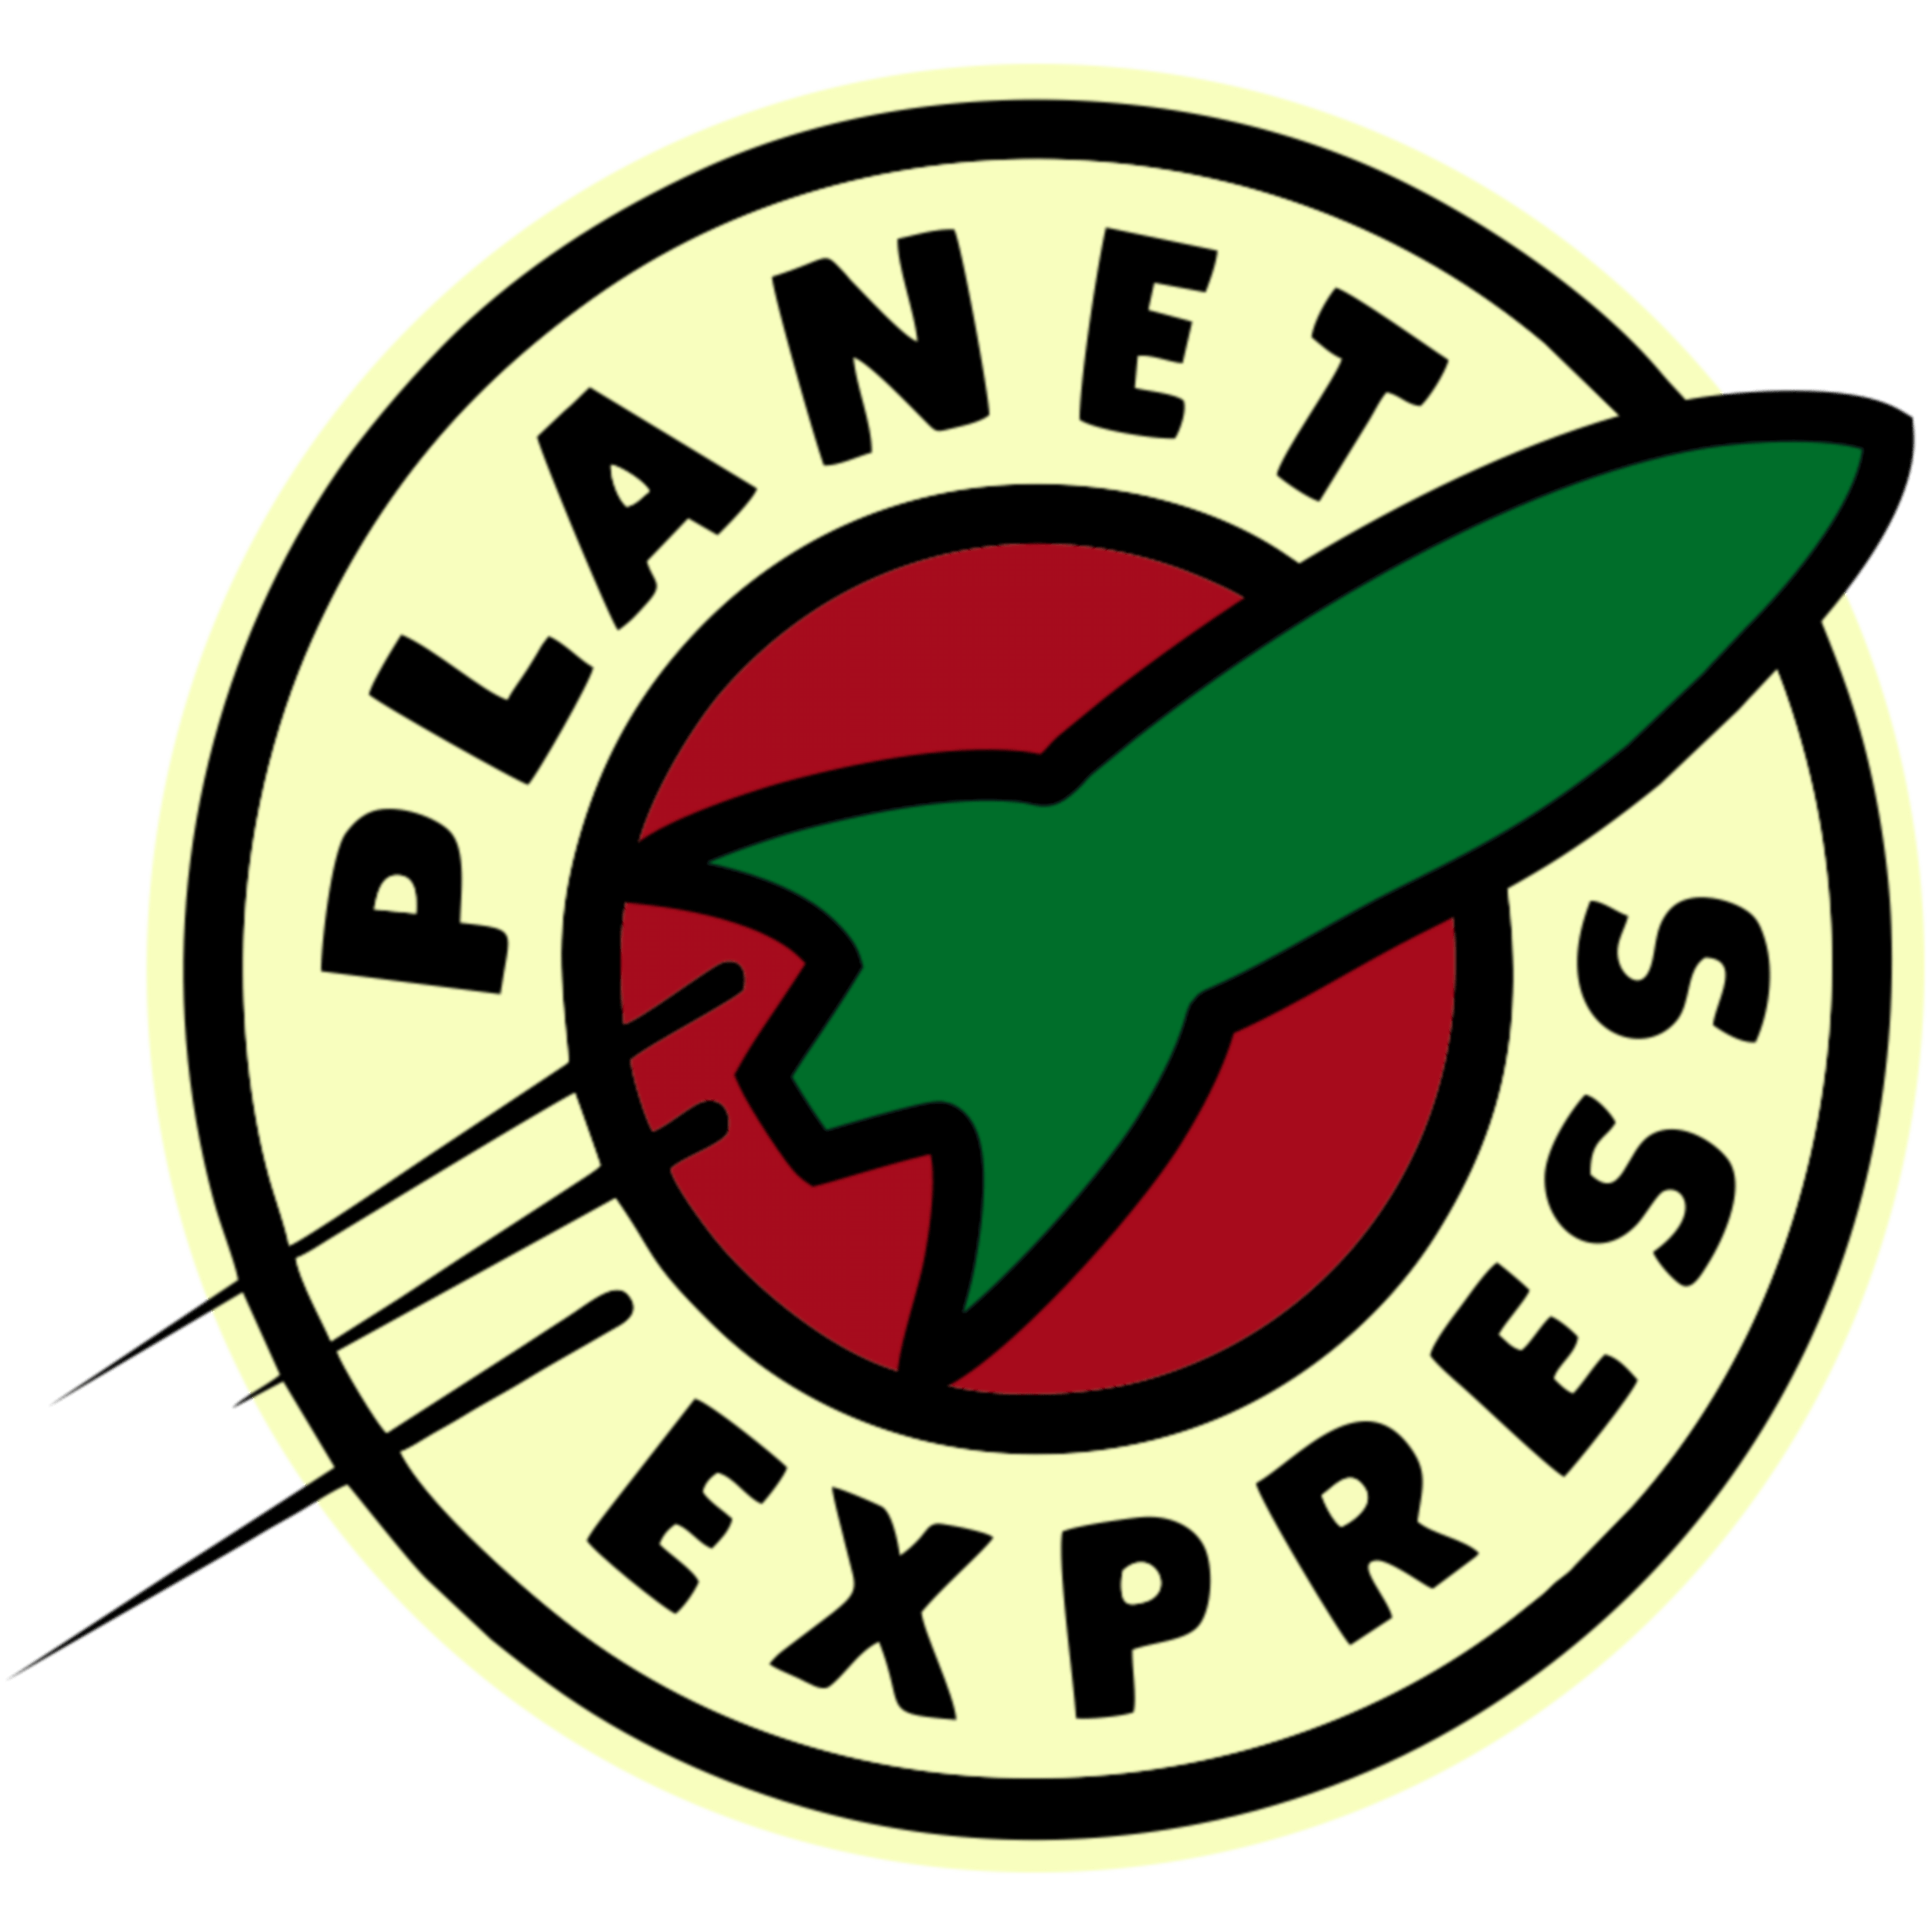 Bender Logo - Planet Express Logo #futurama #planet #express #logo #teepublic ...